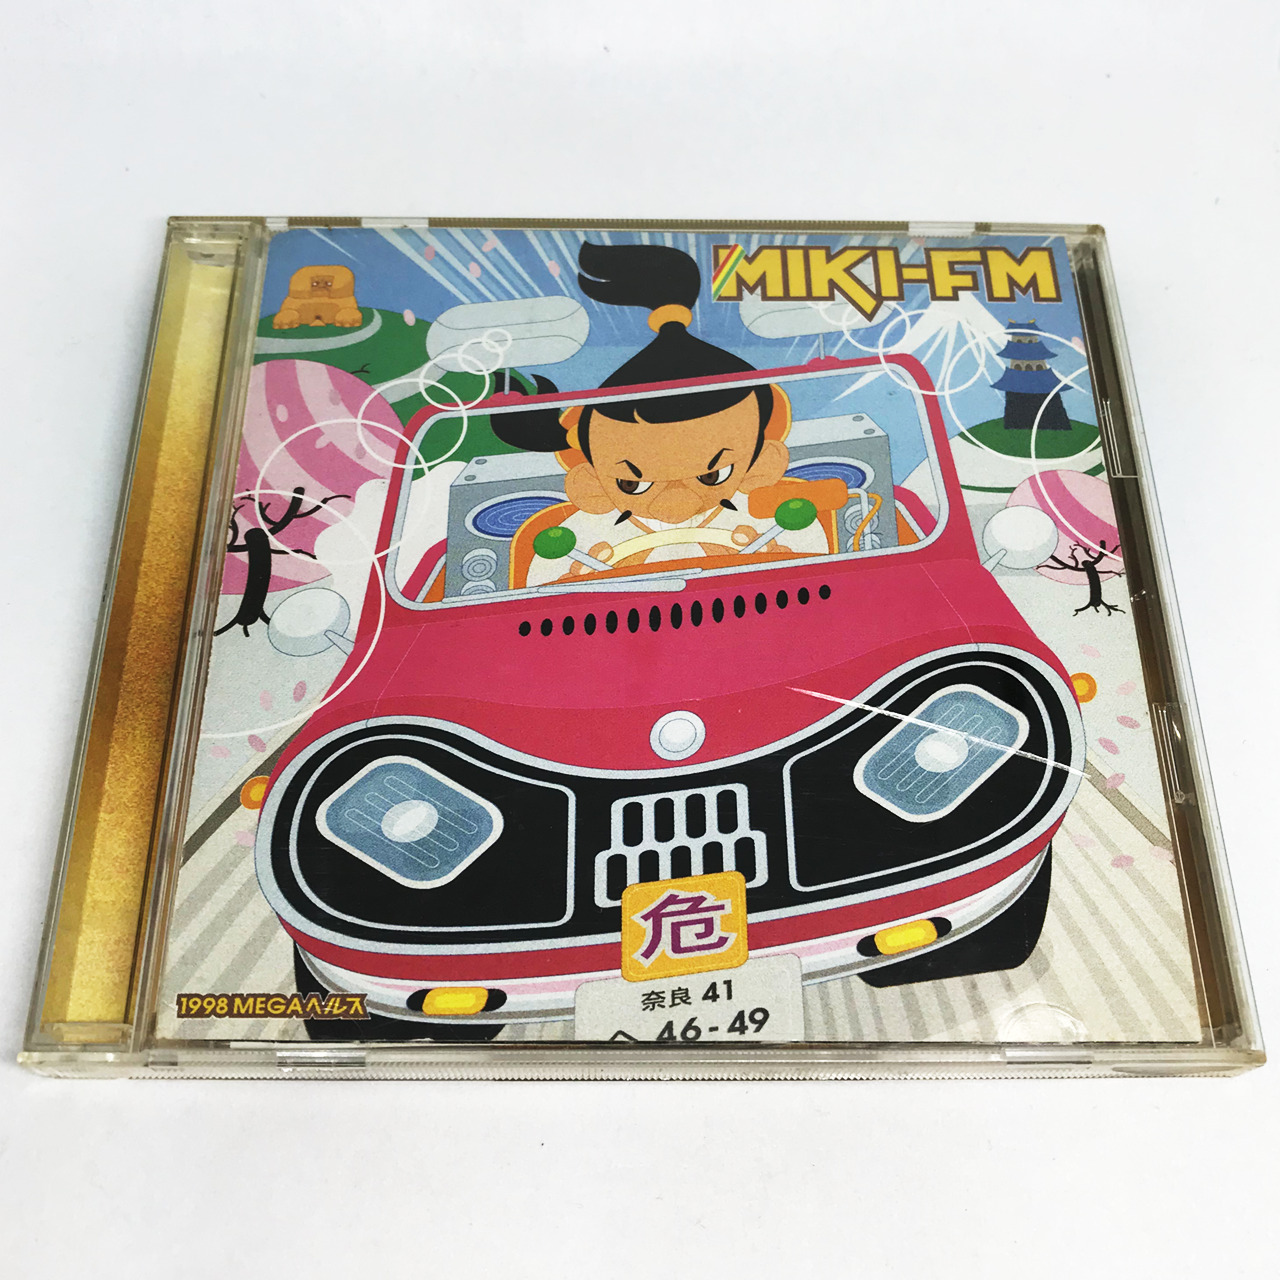 三木道三 / Miki-Fm 1998メガヘルス